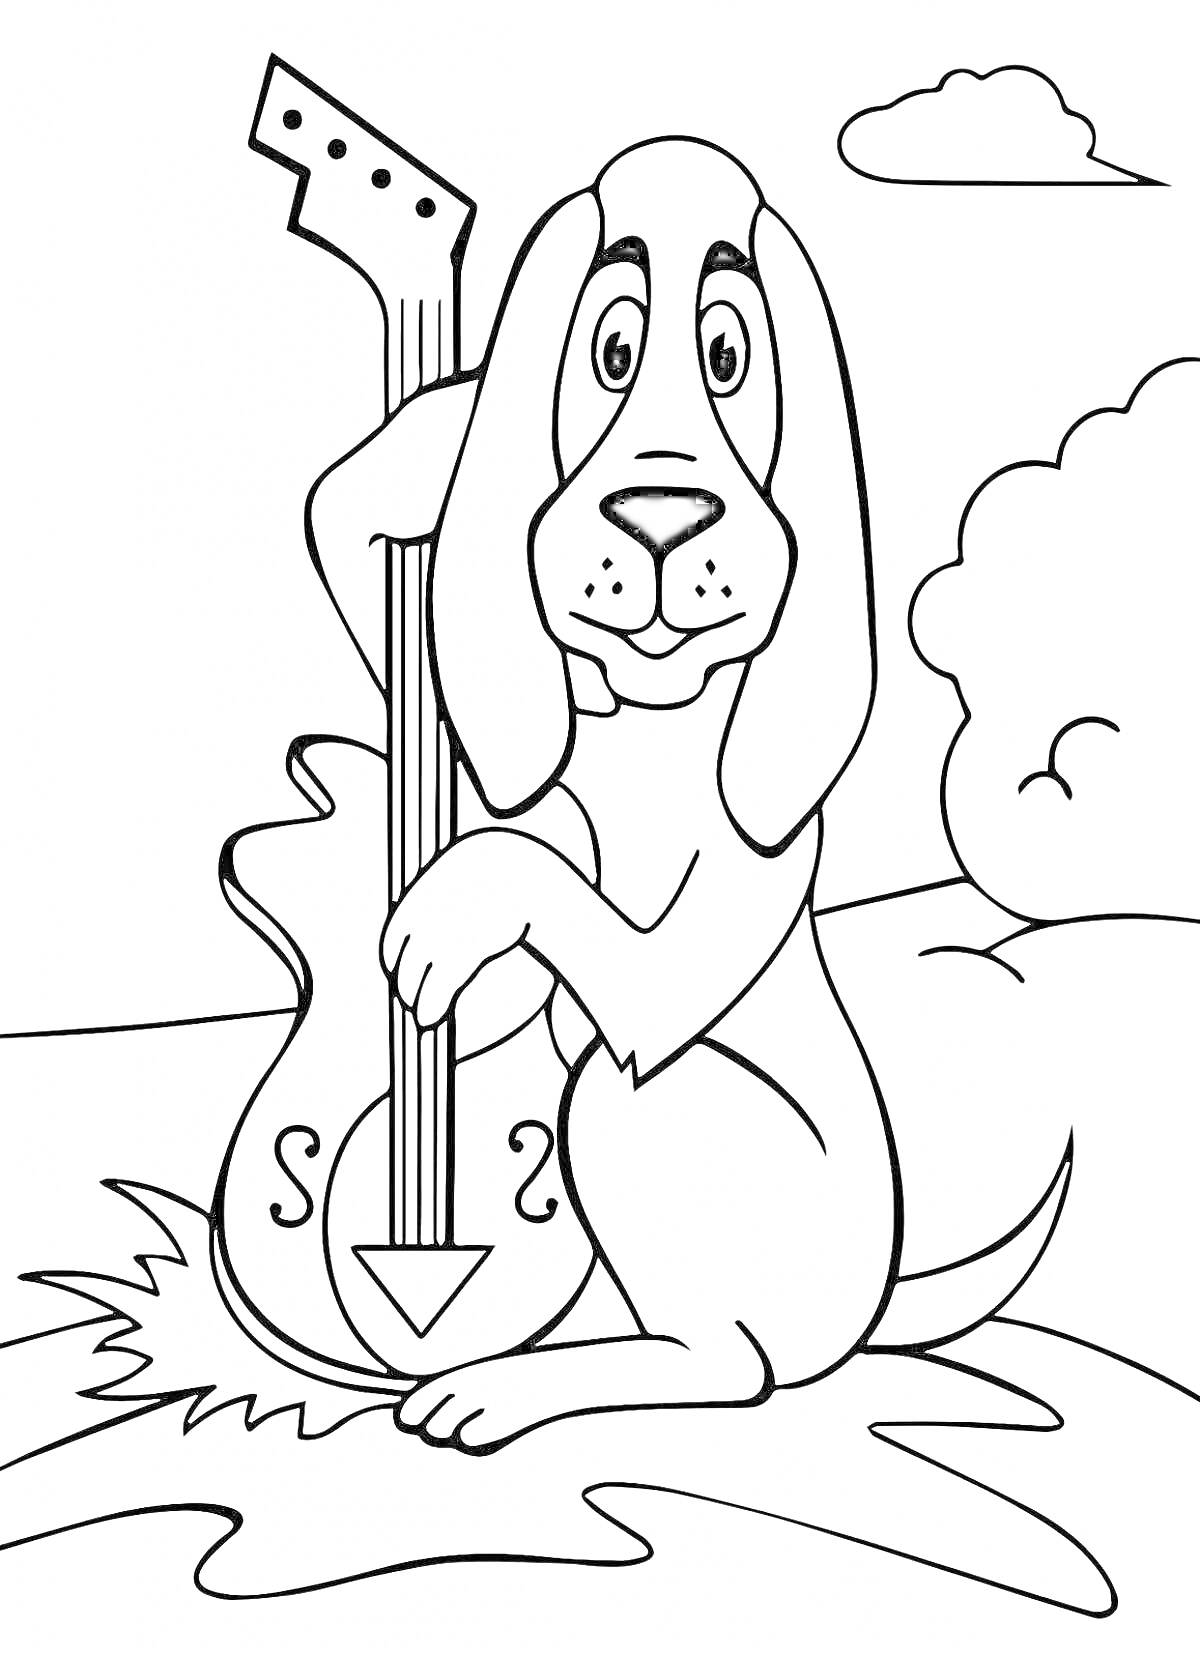 На раскраске изображено: Бременские музыканты, Гитара, Собака, Природа, Музыкальные инструменты